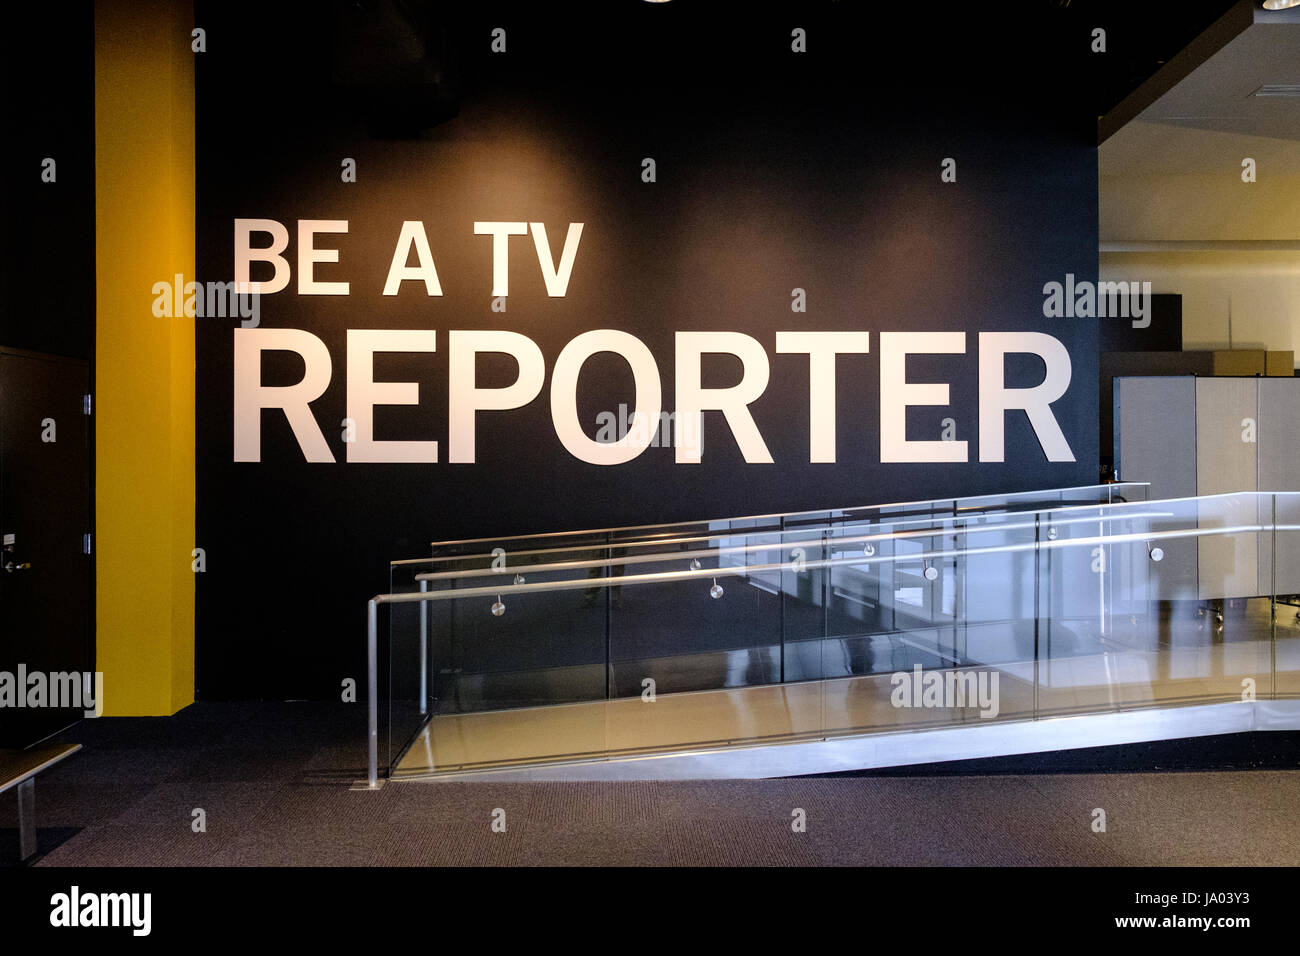 'Être un journaliste de télévision' exposition au Newseum, Pennsylvania Avenue, Washington, DC, USA Banque D'Images